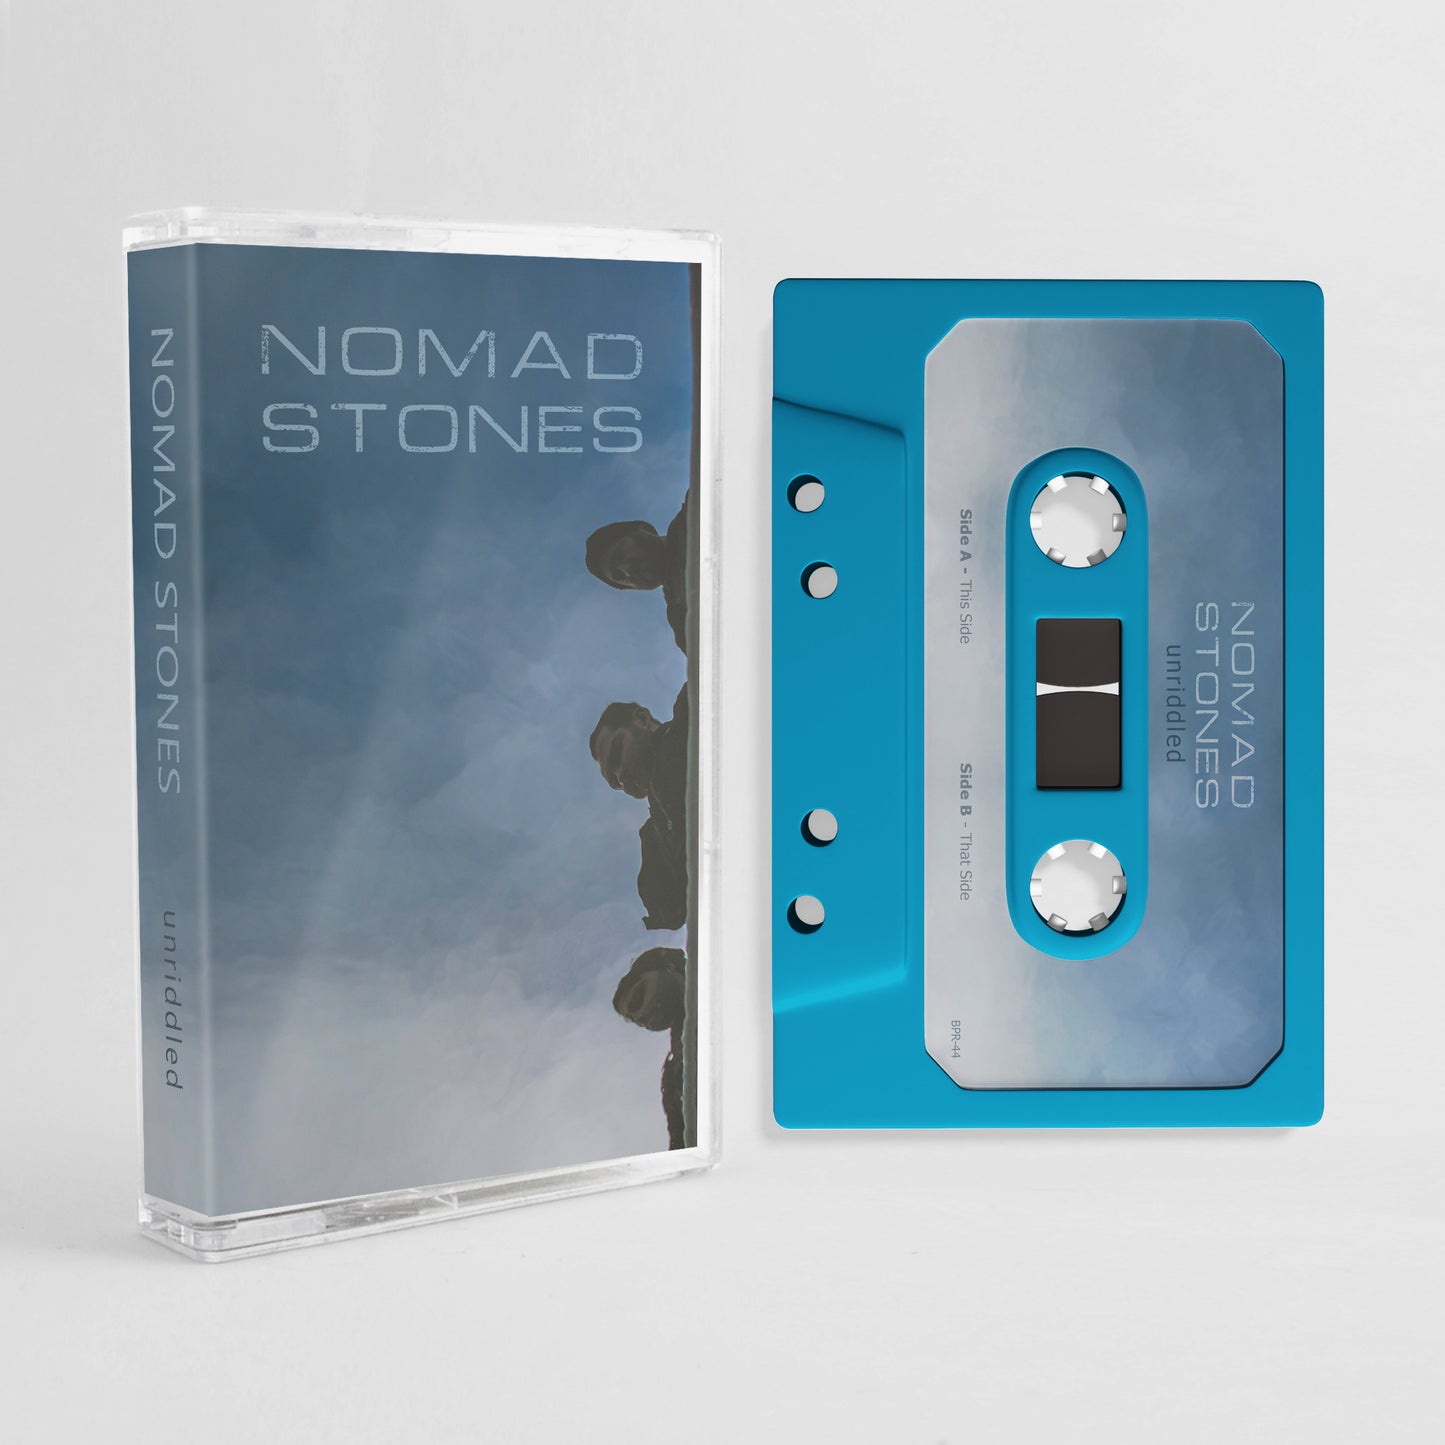 NOMAD STONES - Unriddled Cassette Tape